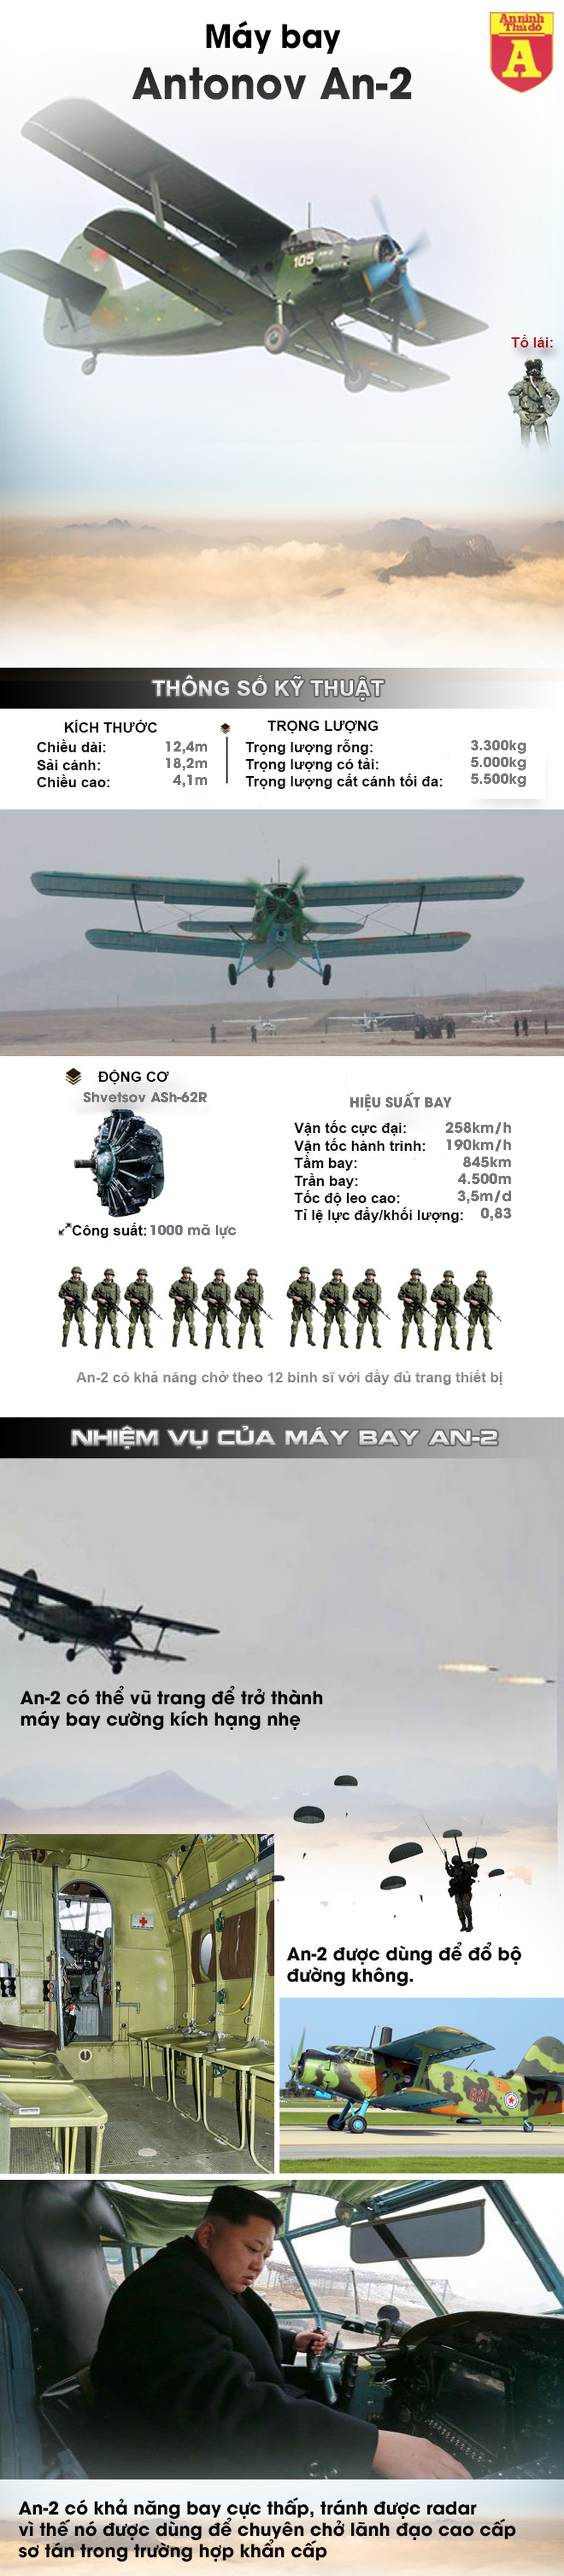 [Infographic] Đây chính là lý do Triều Tiên cho "lão tướng" An-2 đóng giả chiến thần F-15K - Ảnh 1